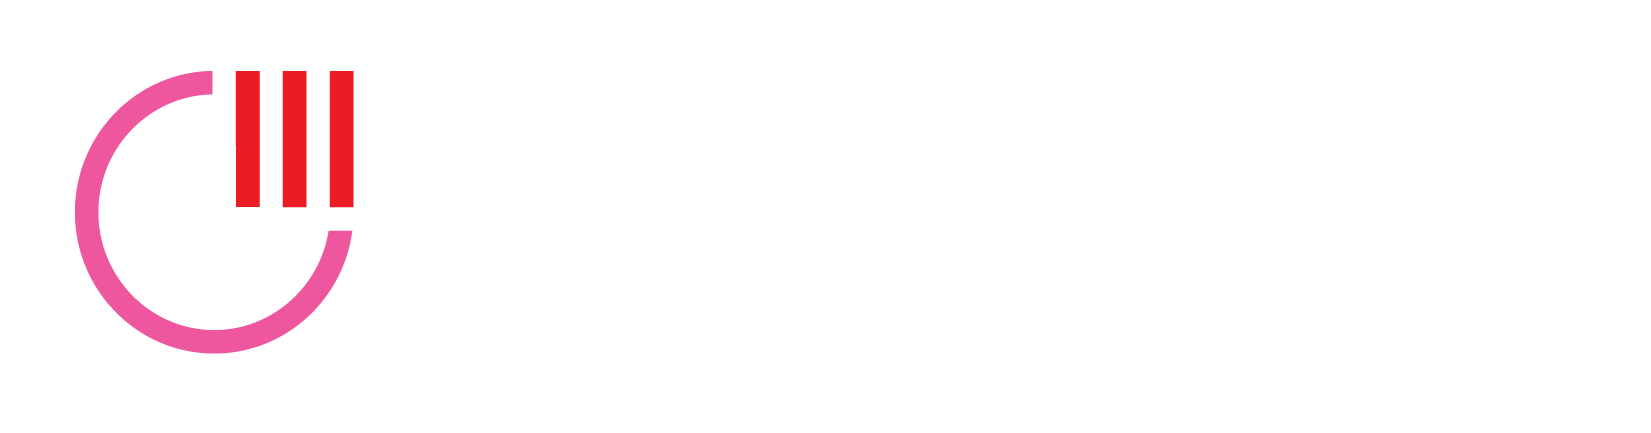 Massachusetts LGBT Chamber of Commerce